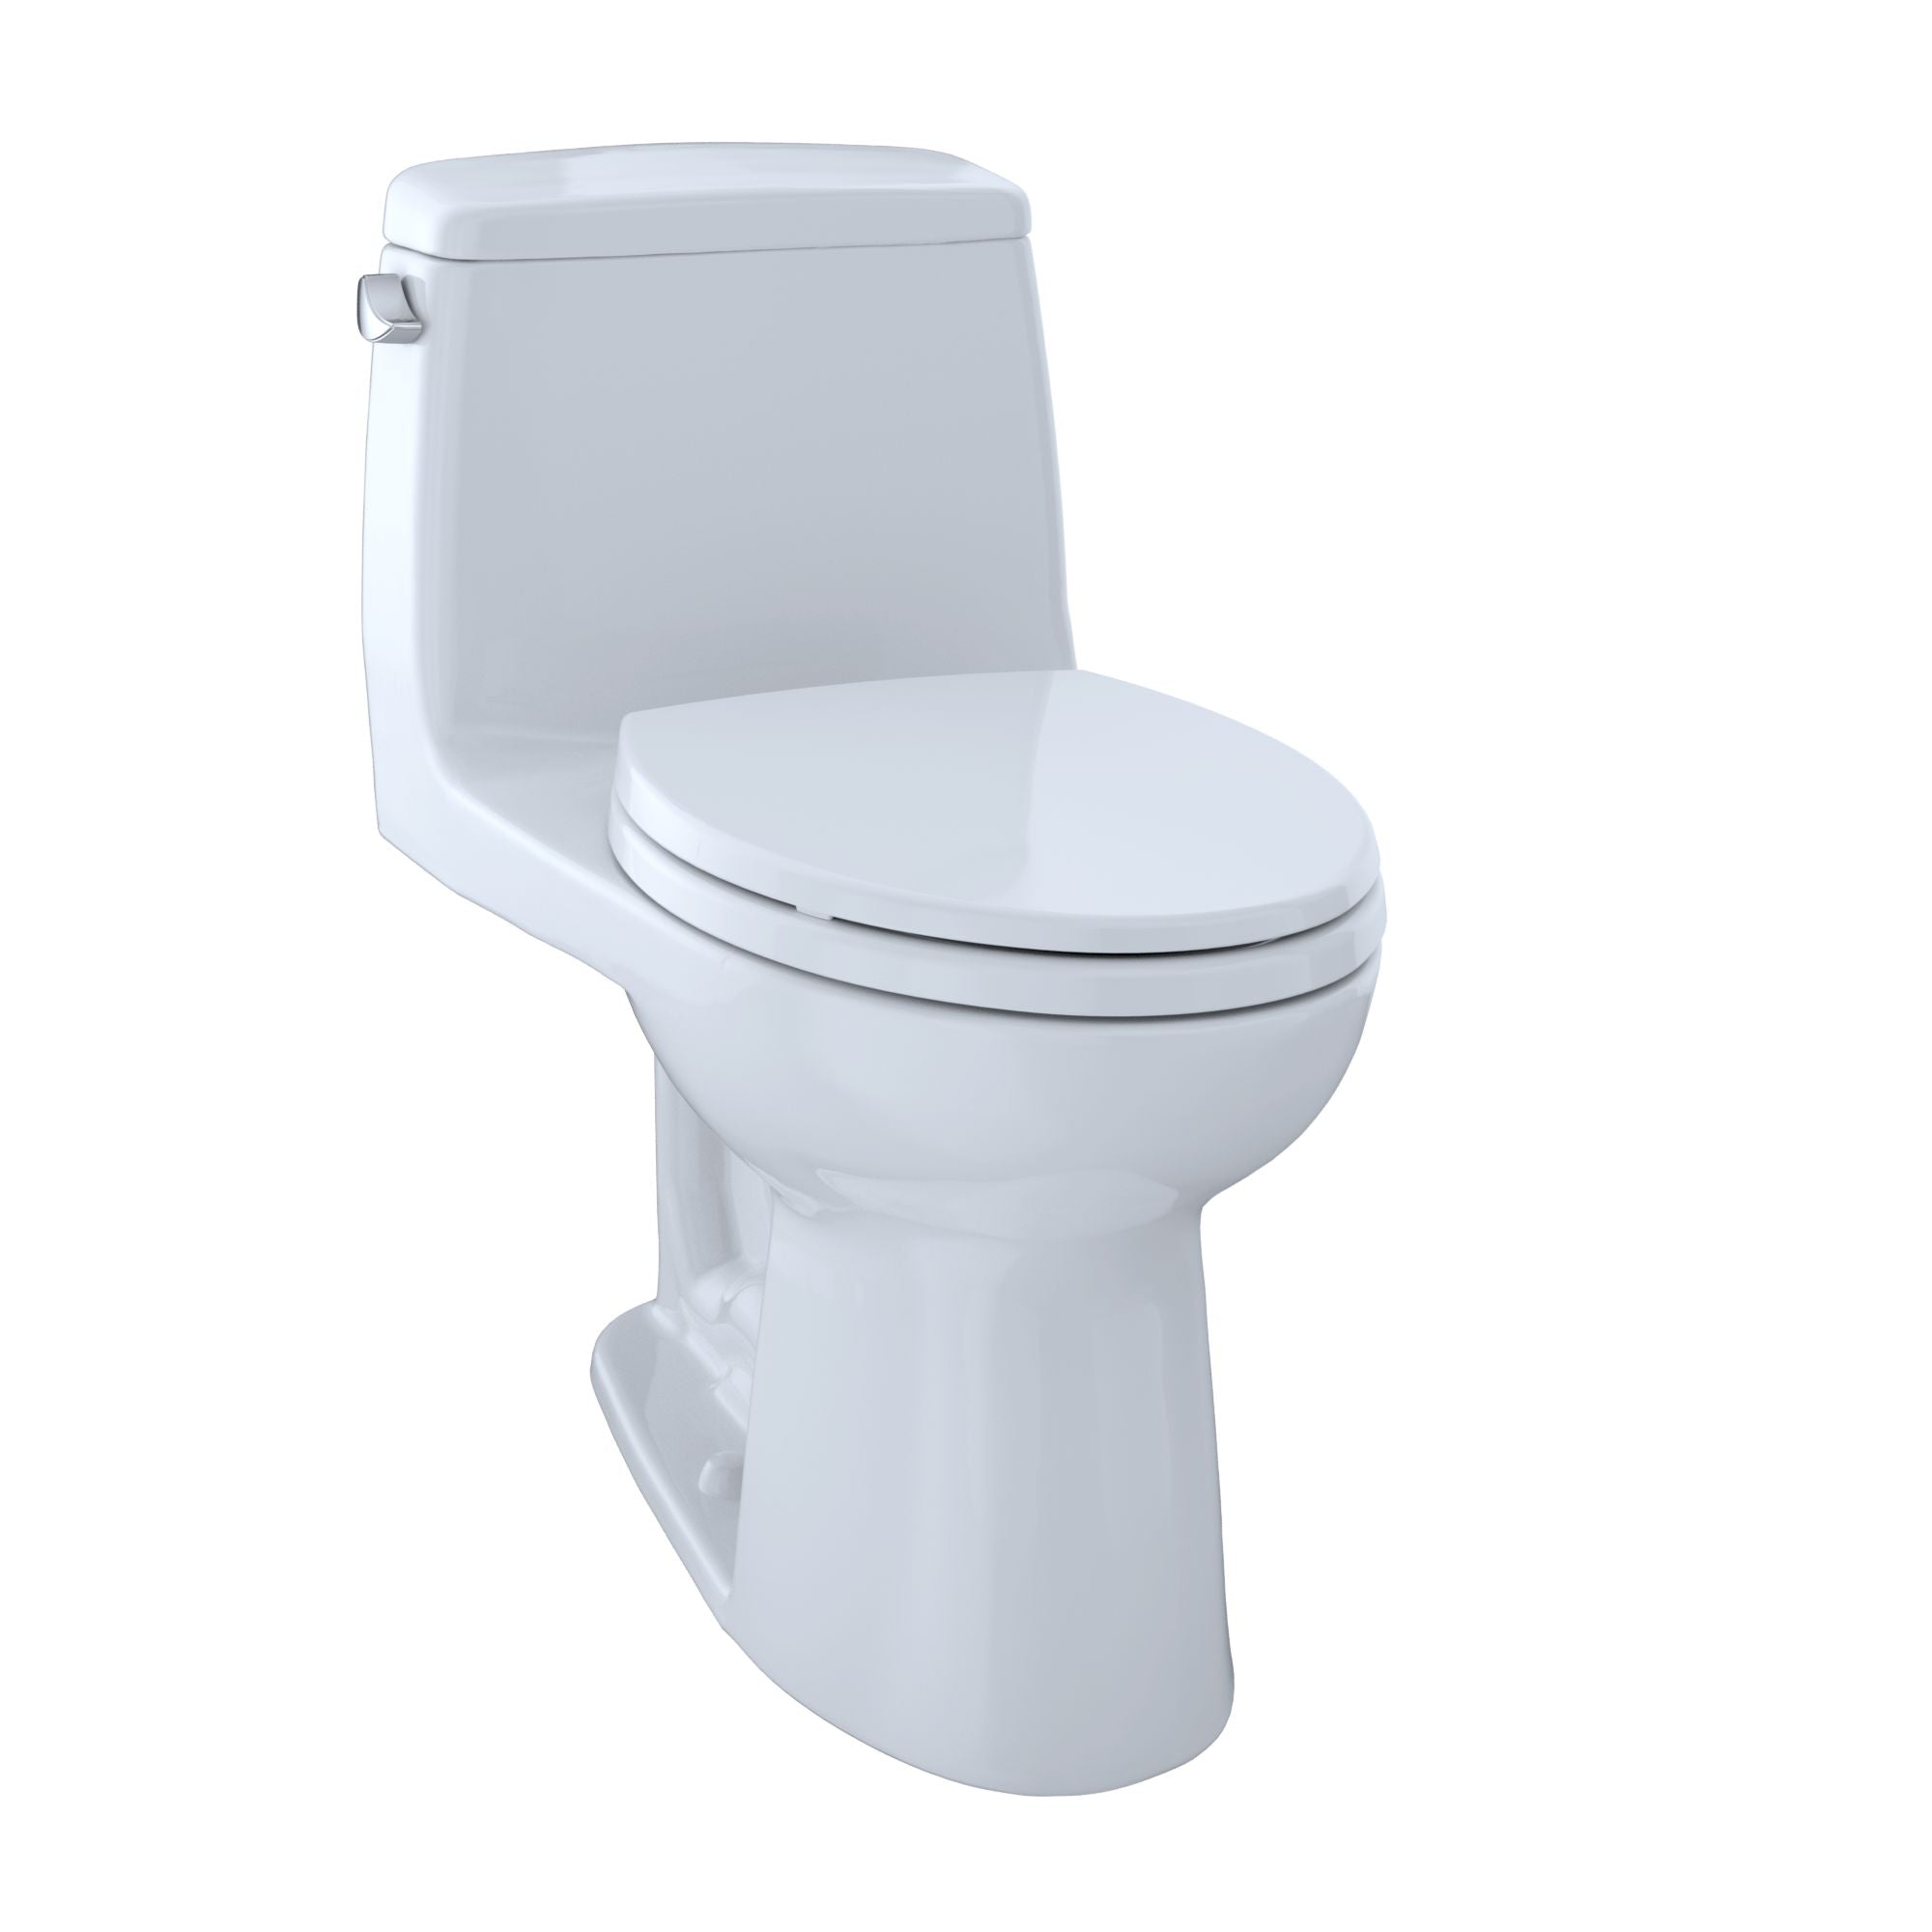 cotton toilet seat